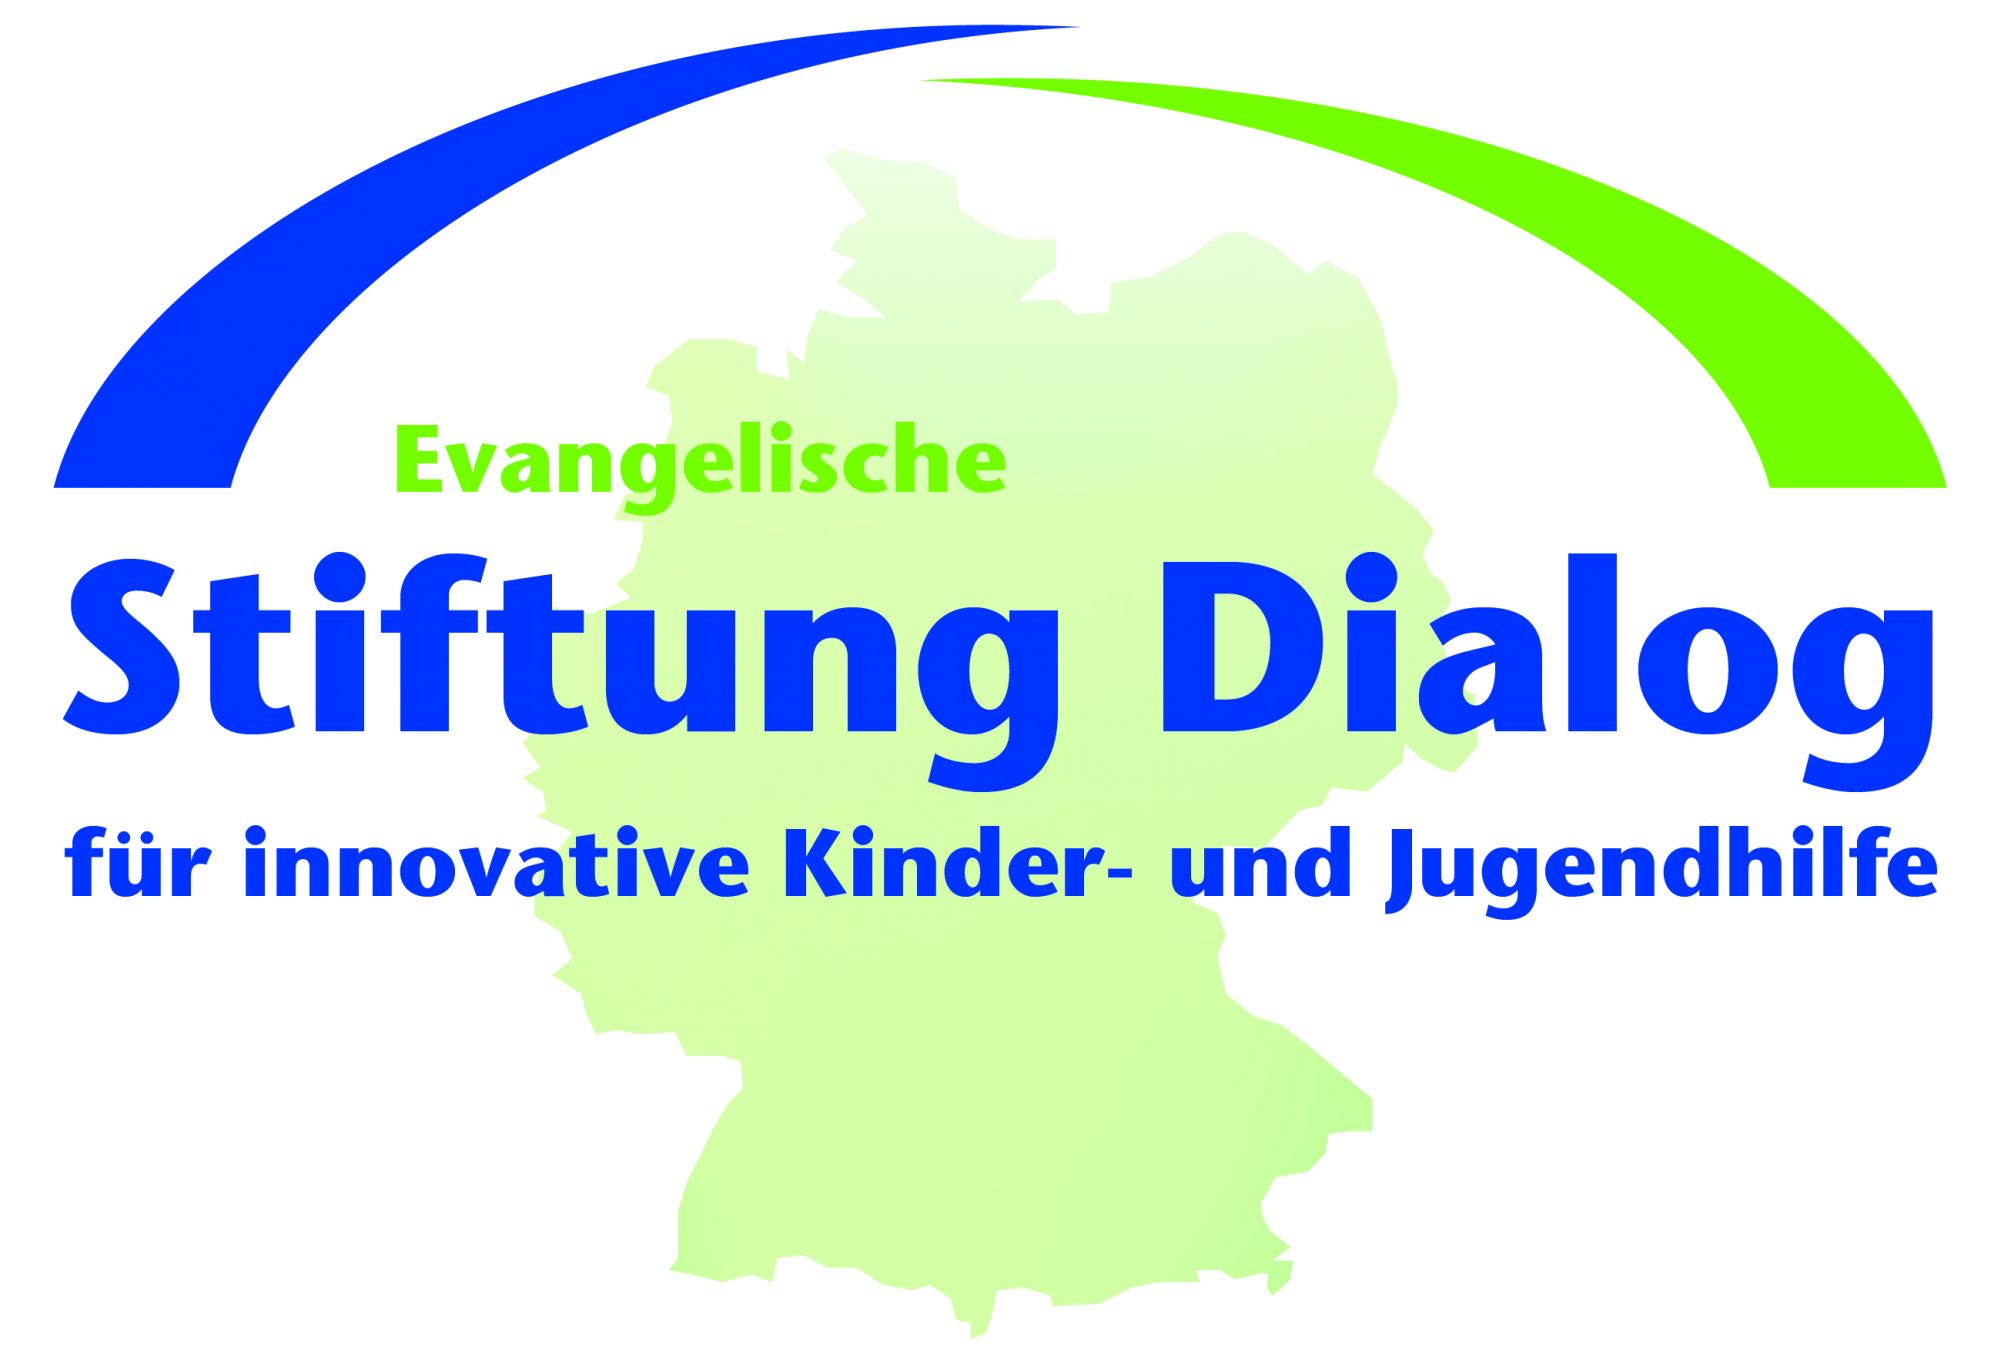 Evangelische Stiftung Dialog für innovative Kinder- und Jugendhilfe